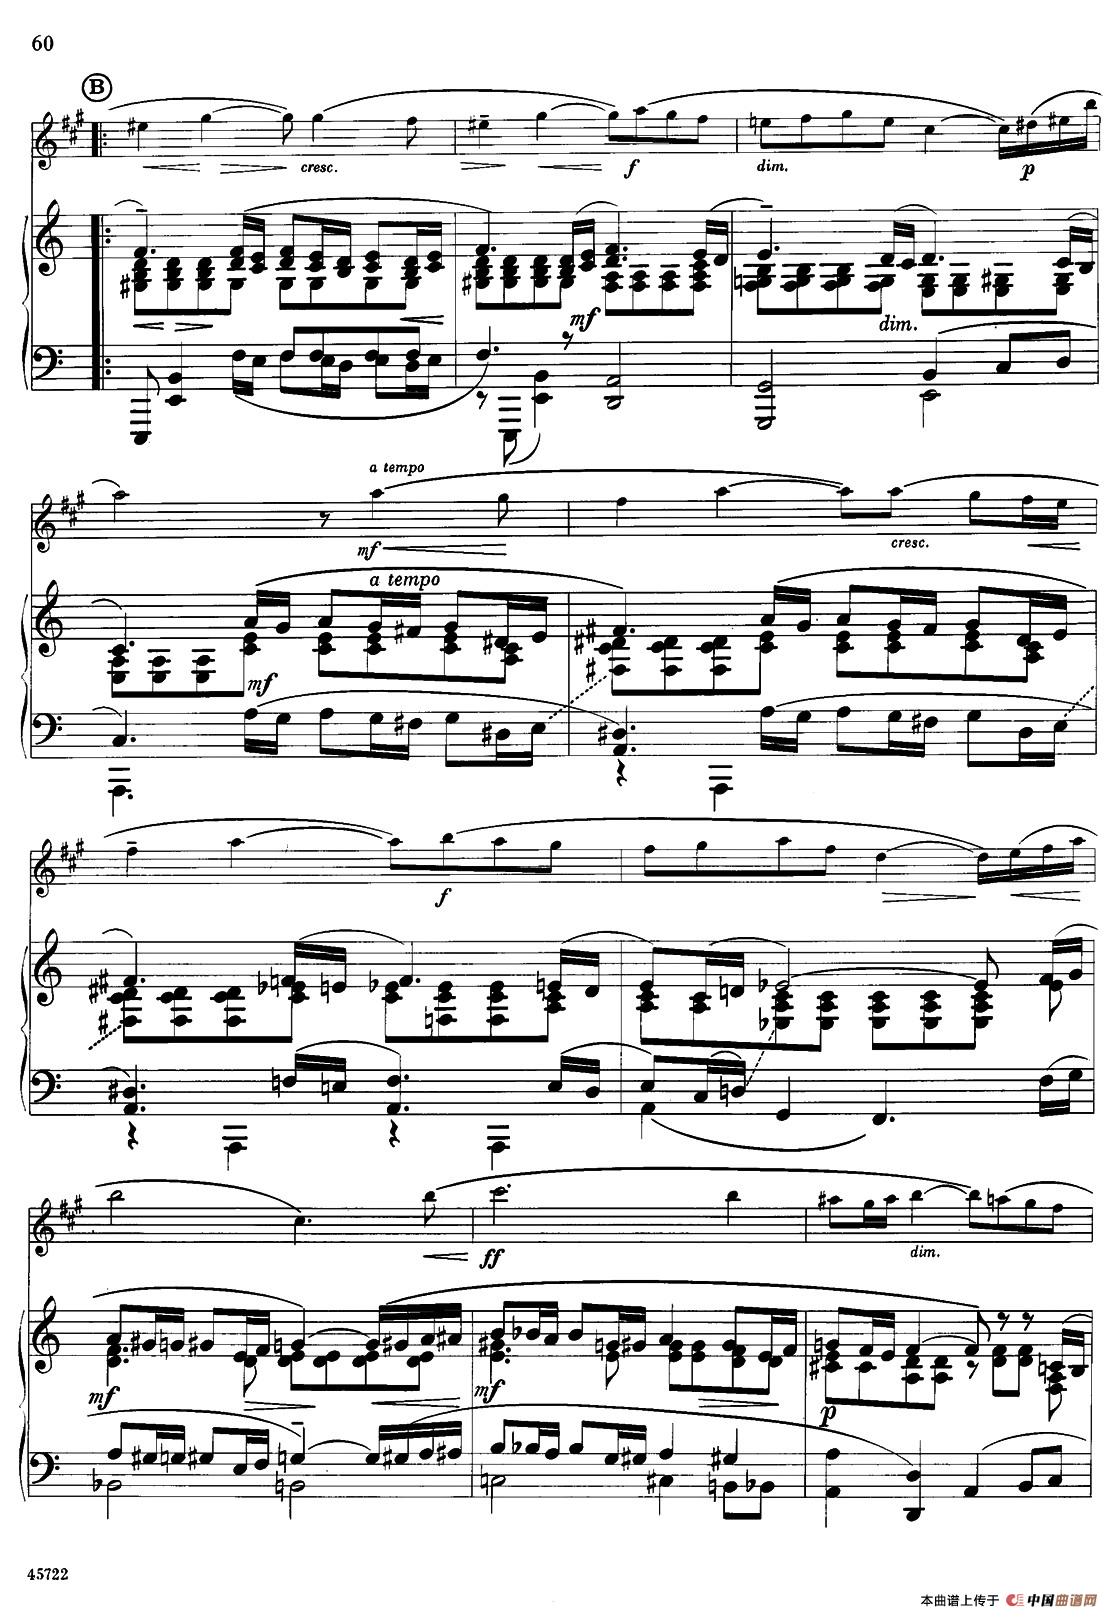 15首古典萨克斯独奏曲：13、Vocalise（中音萨克斯